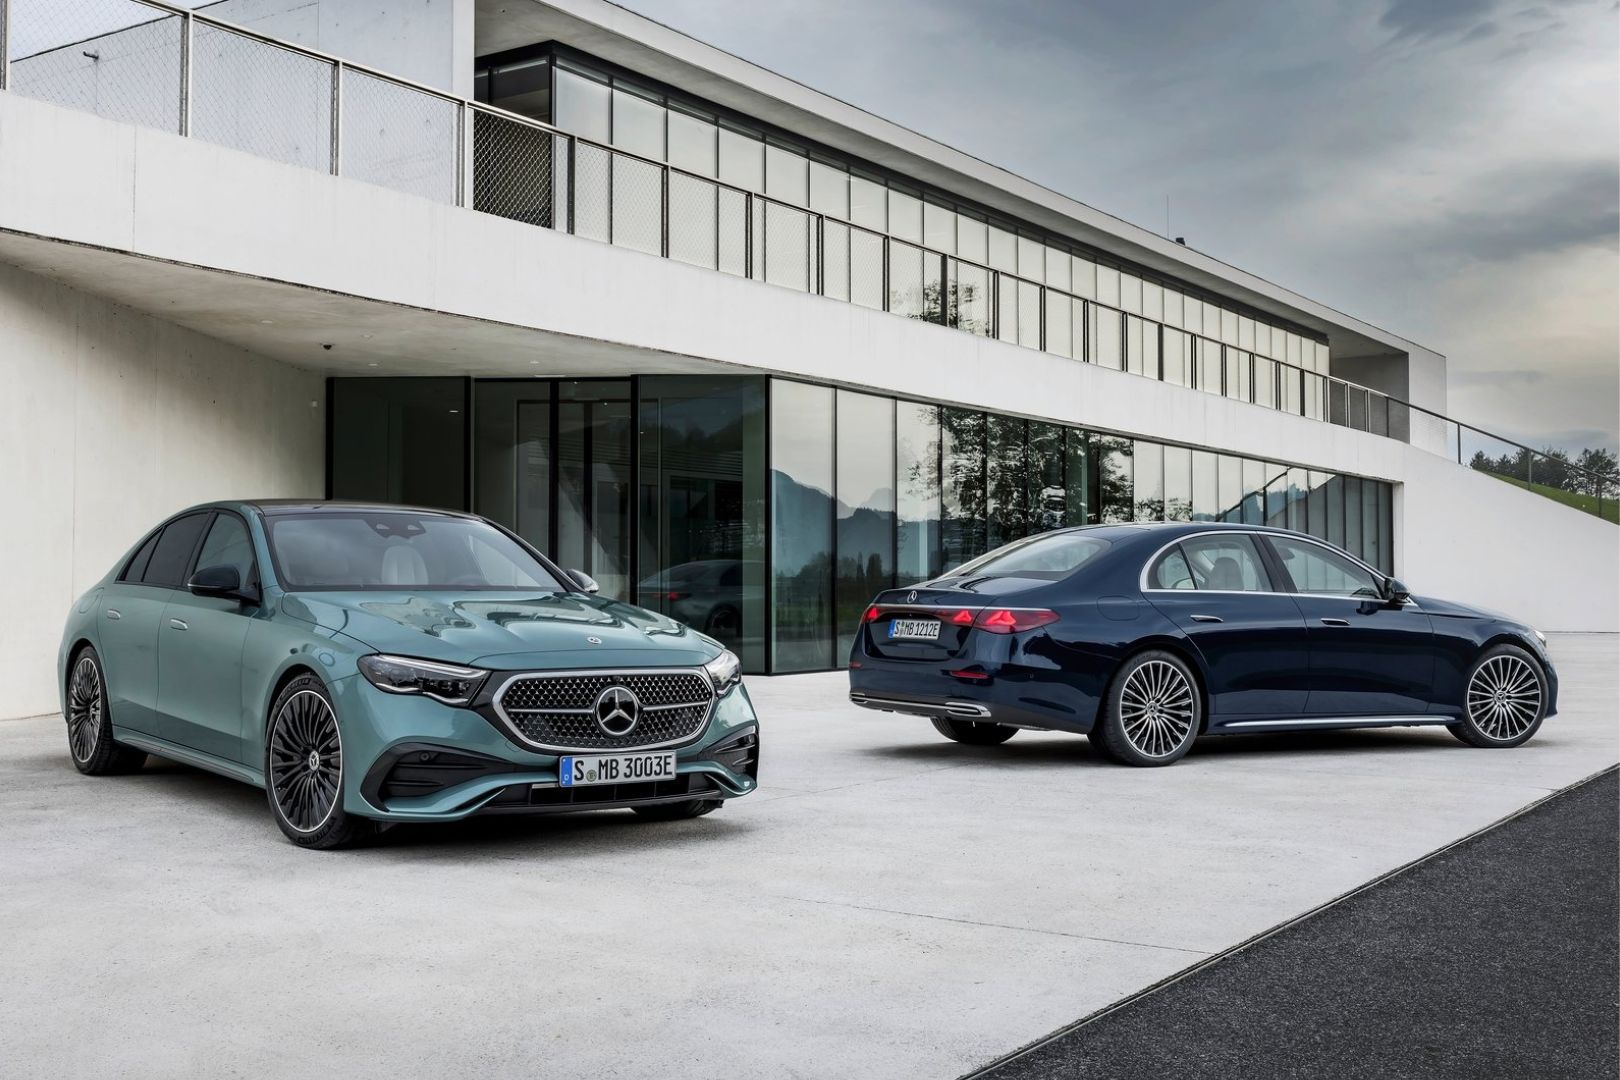 Mercedes C-Class Generations